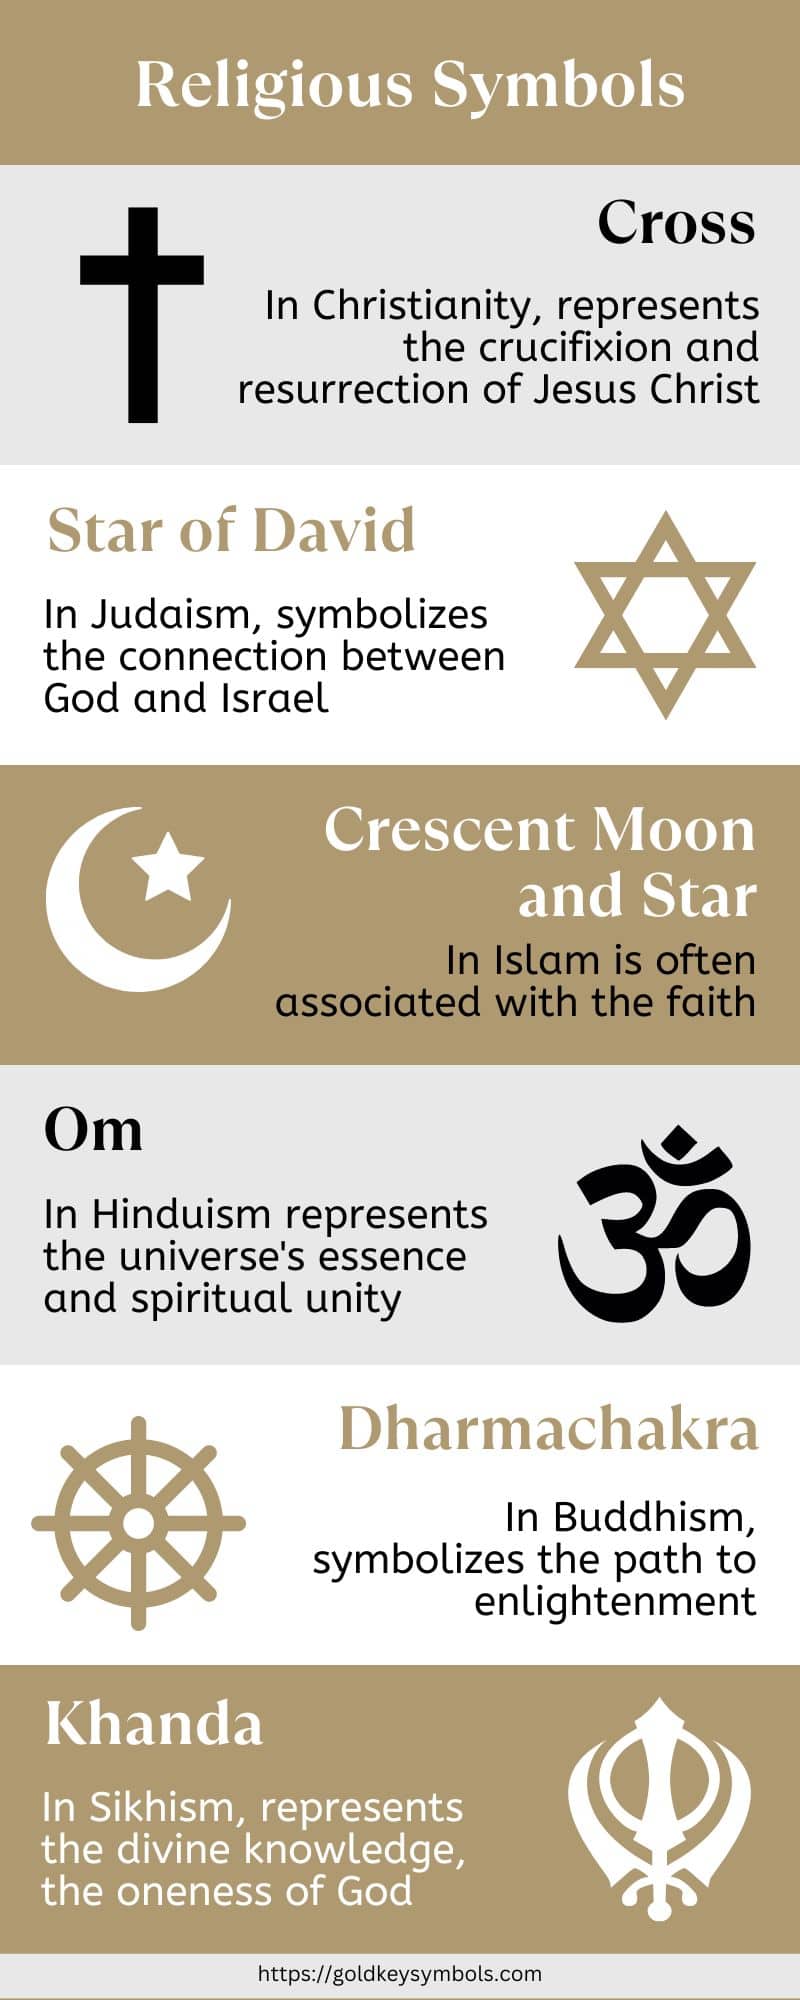 Religious symbols infographic